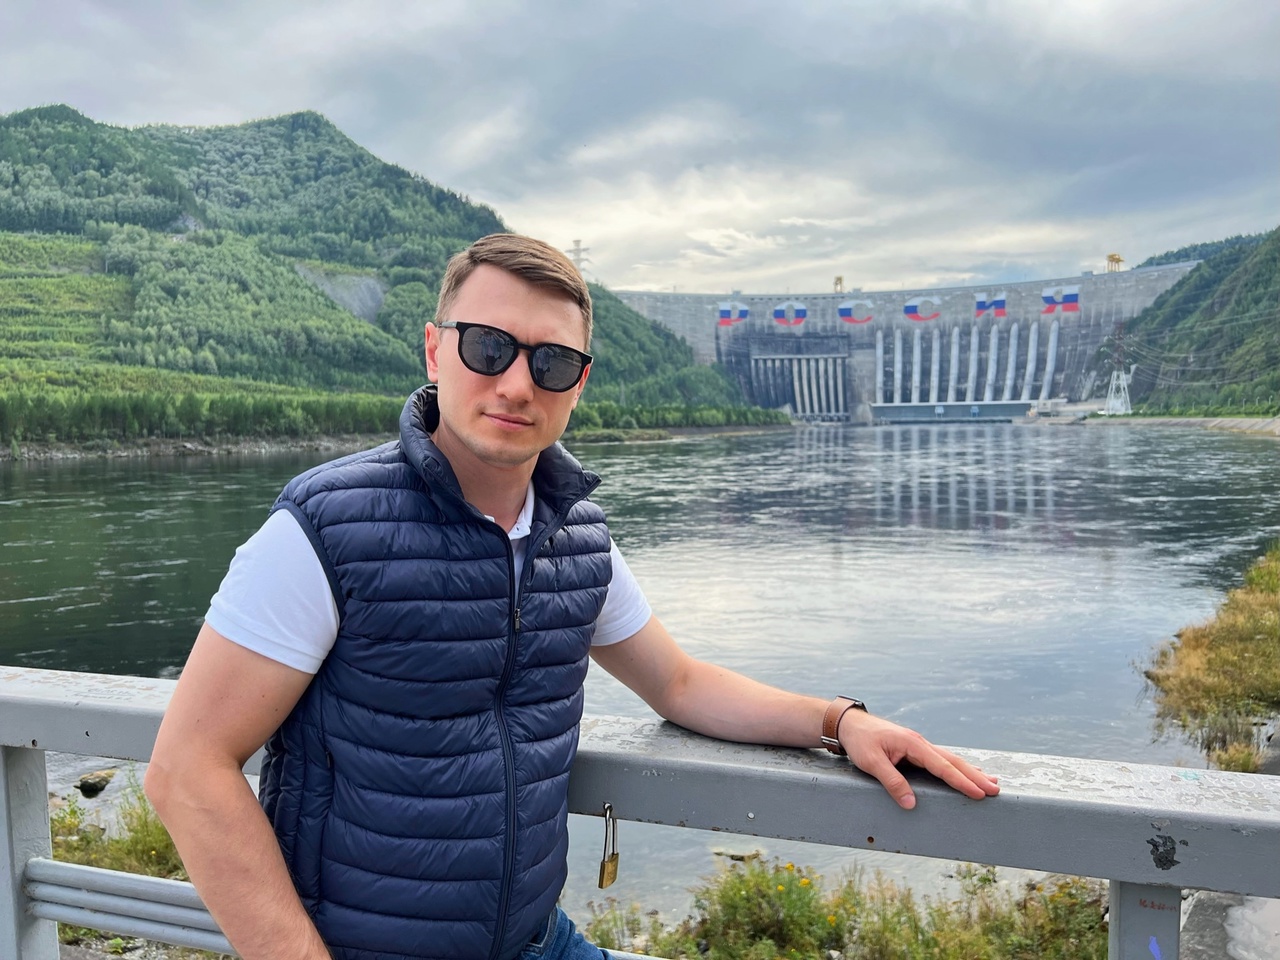 Саяно-Шушенская ГЭС в Хакасии — самая мощная электростанция в России и одна из крупнейших гидроэлектростанций в мире. Она расположена на могучей Сибирской реке Енисей, в поселке Черемушки Республики Хакасия.